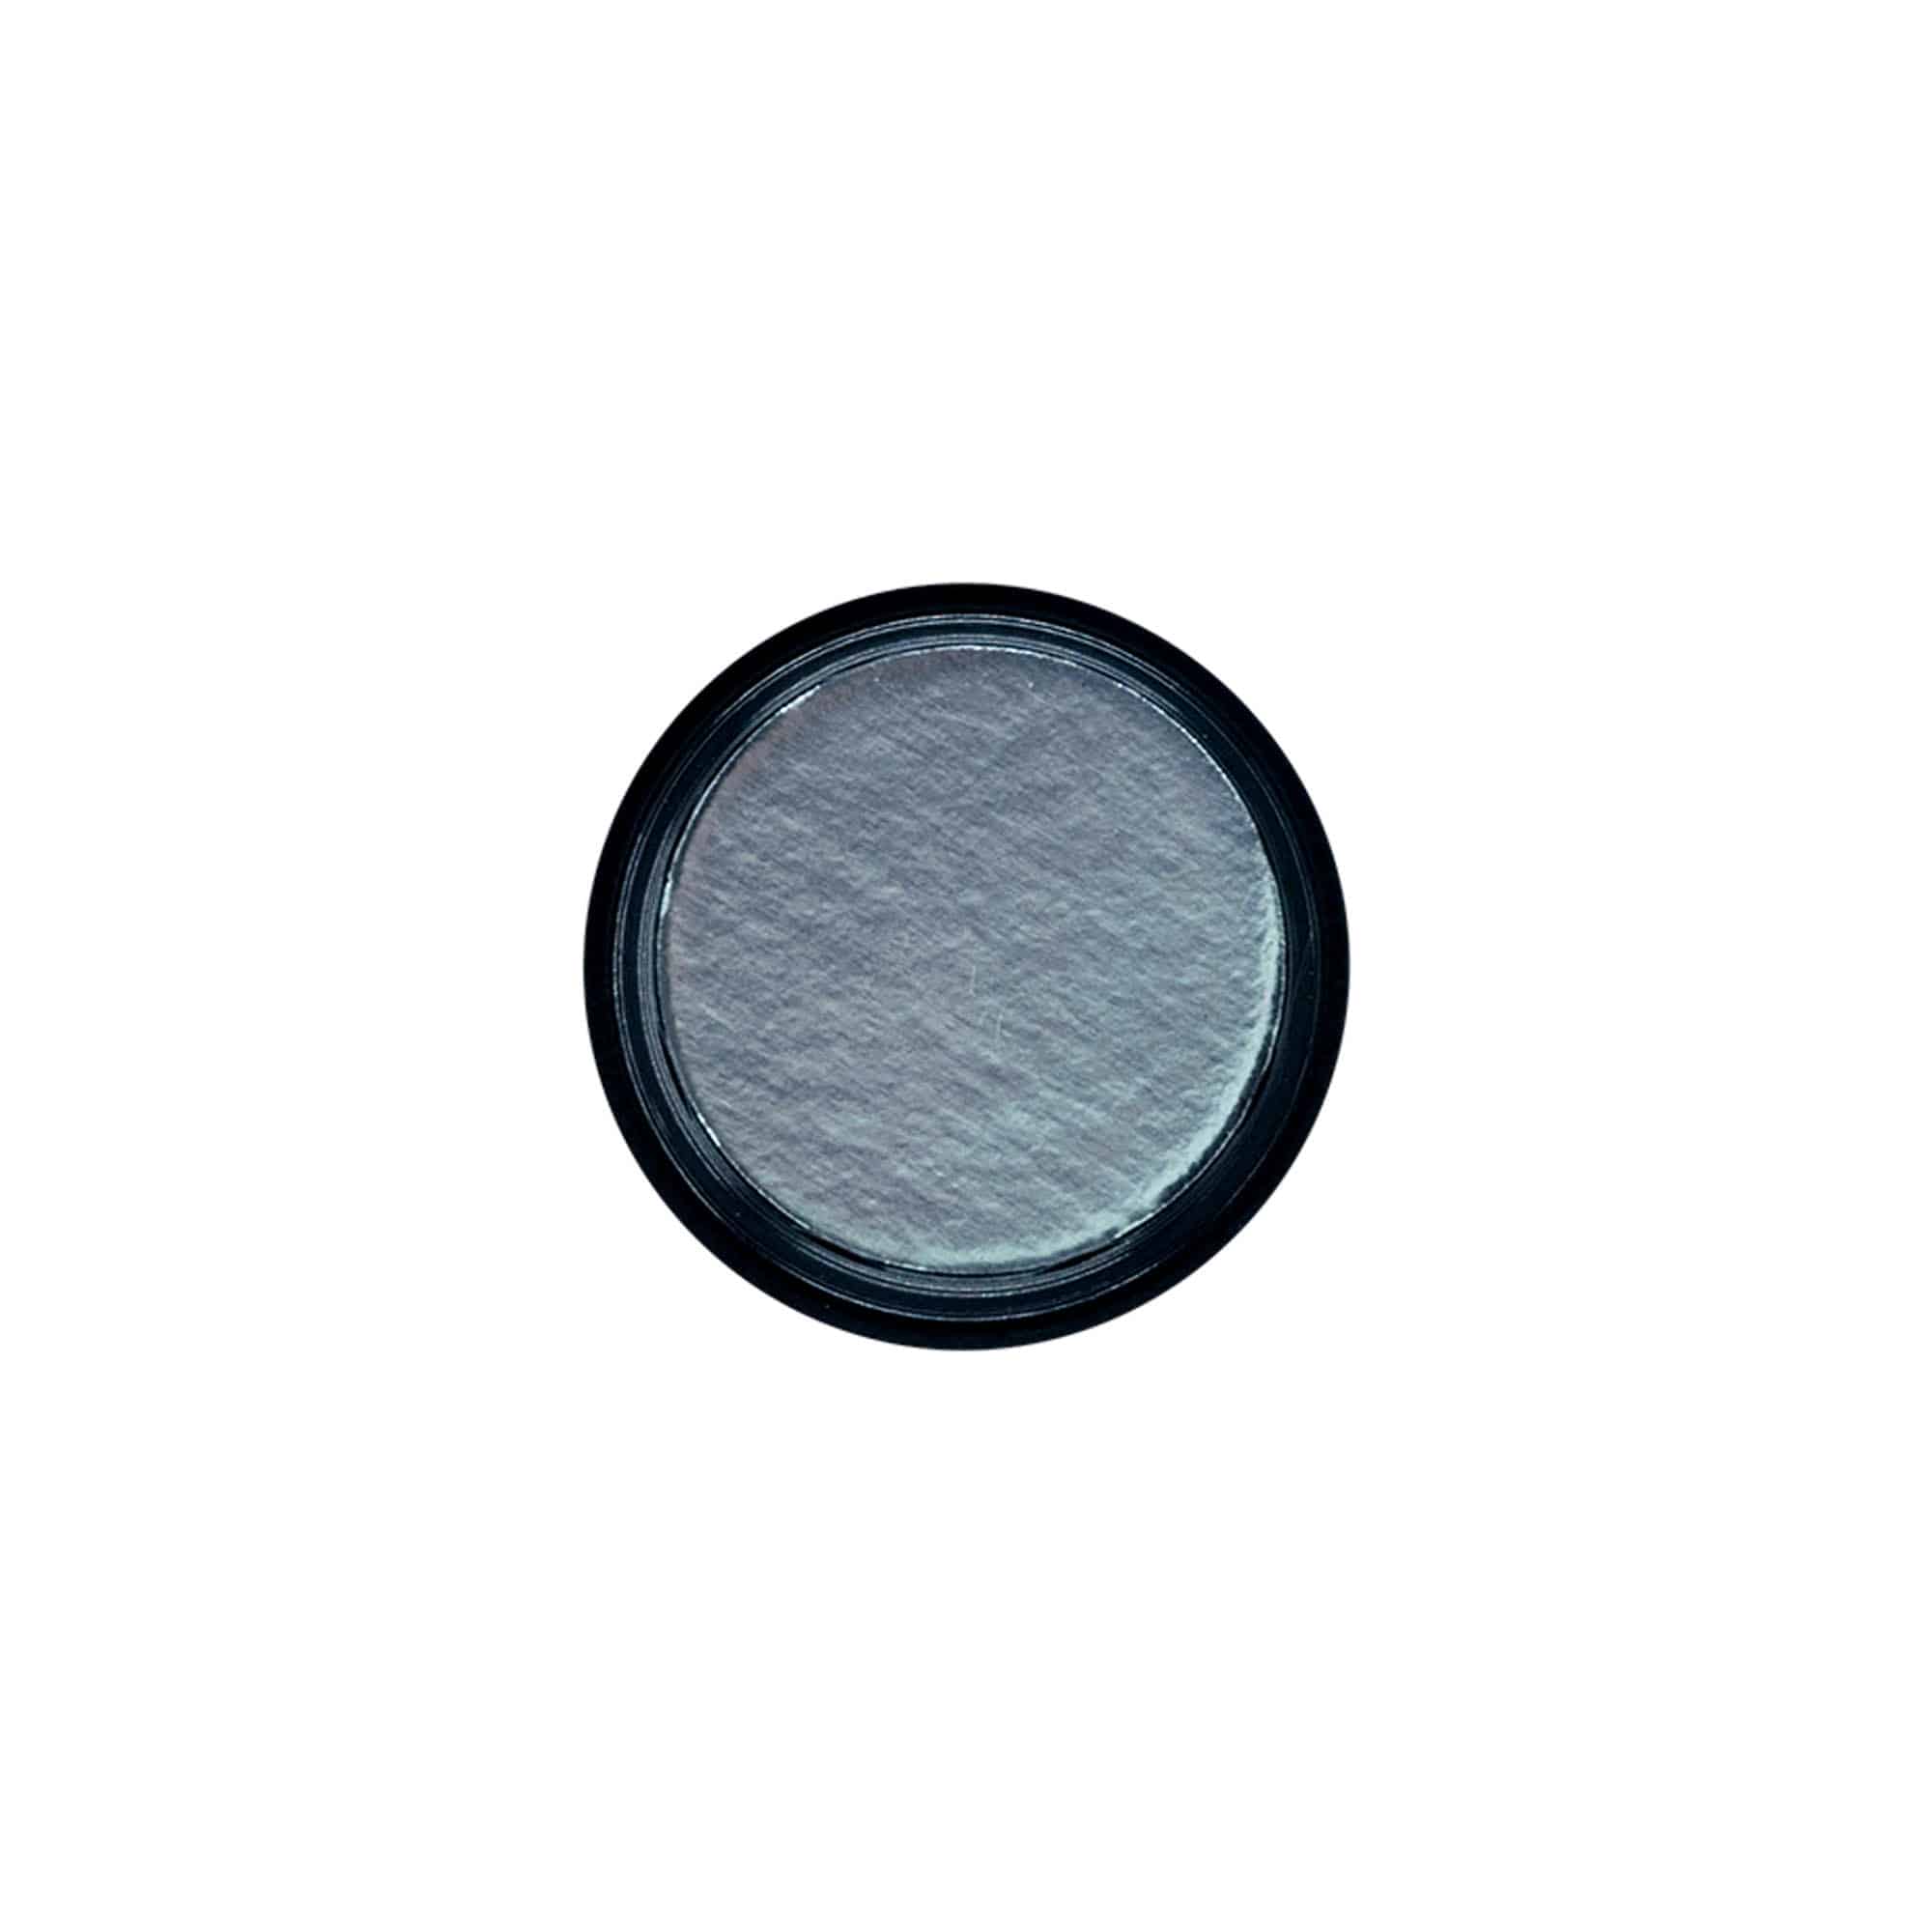 Šroubovací uzávěr 'Kalamář', plast HPM, černý